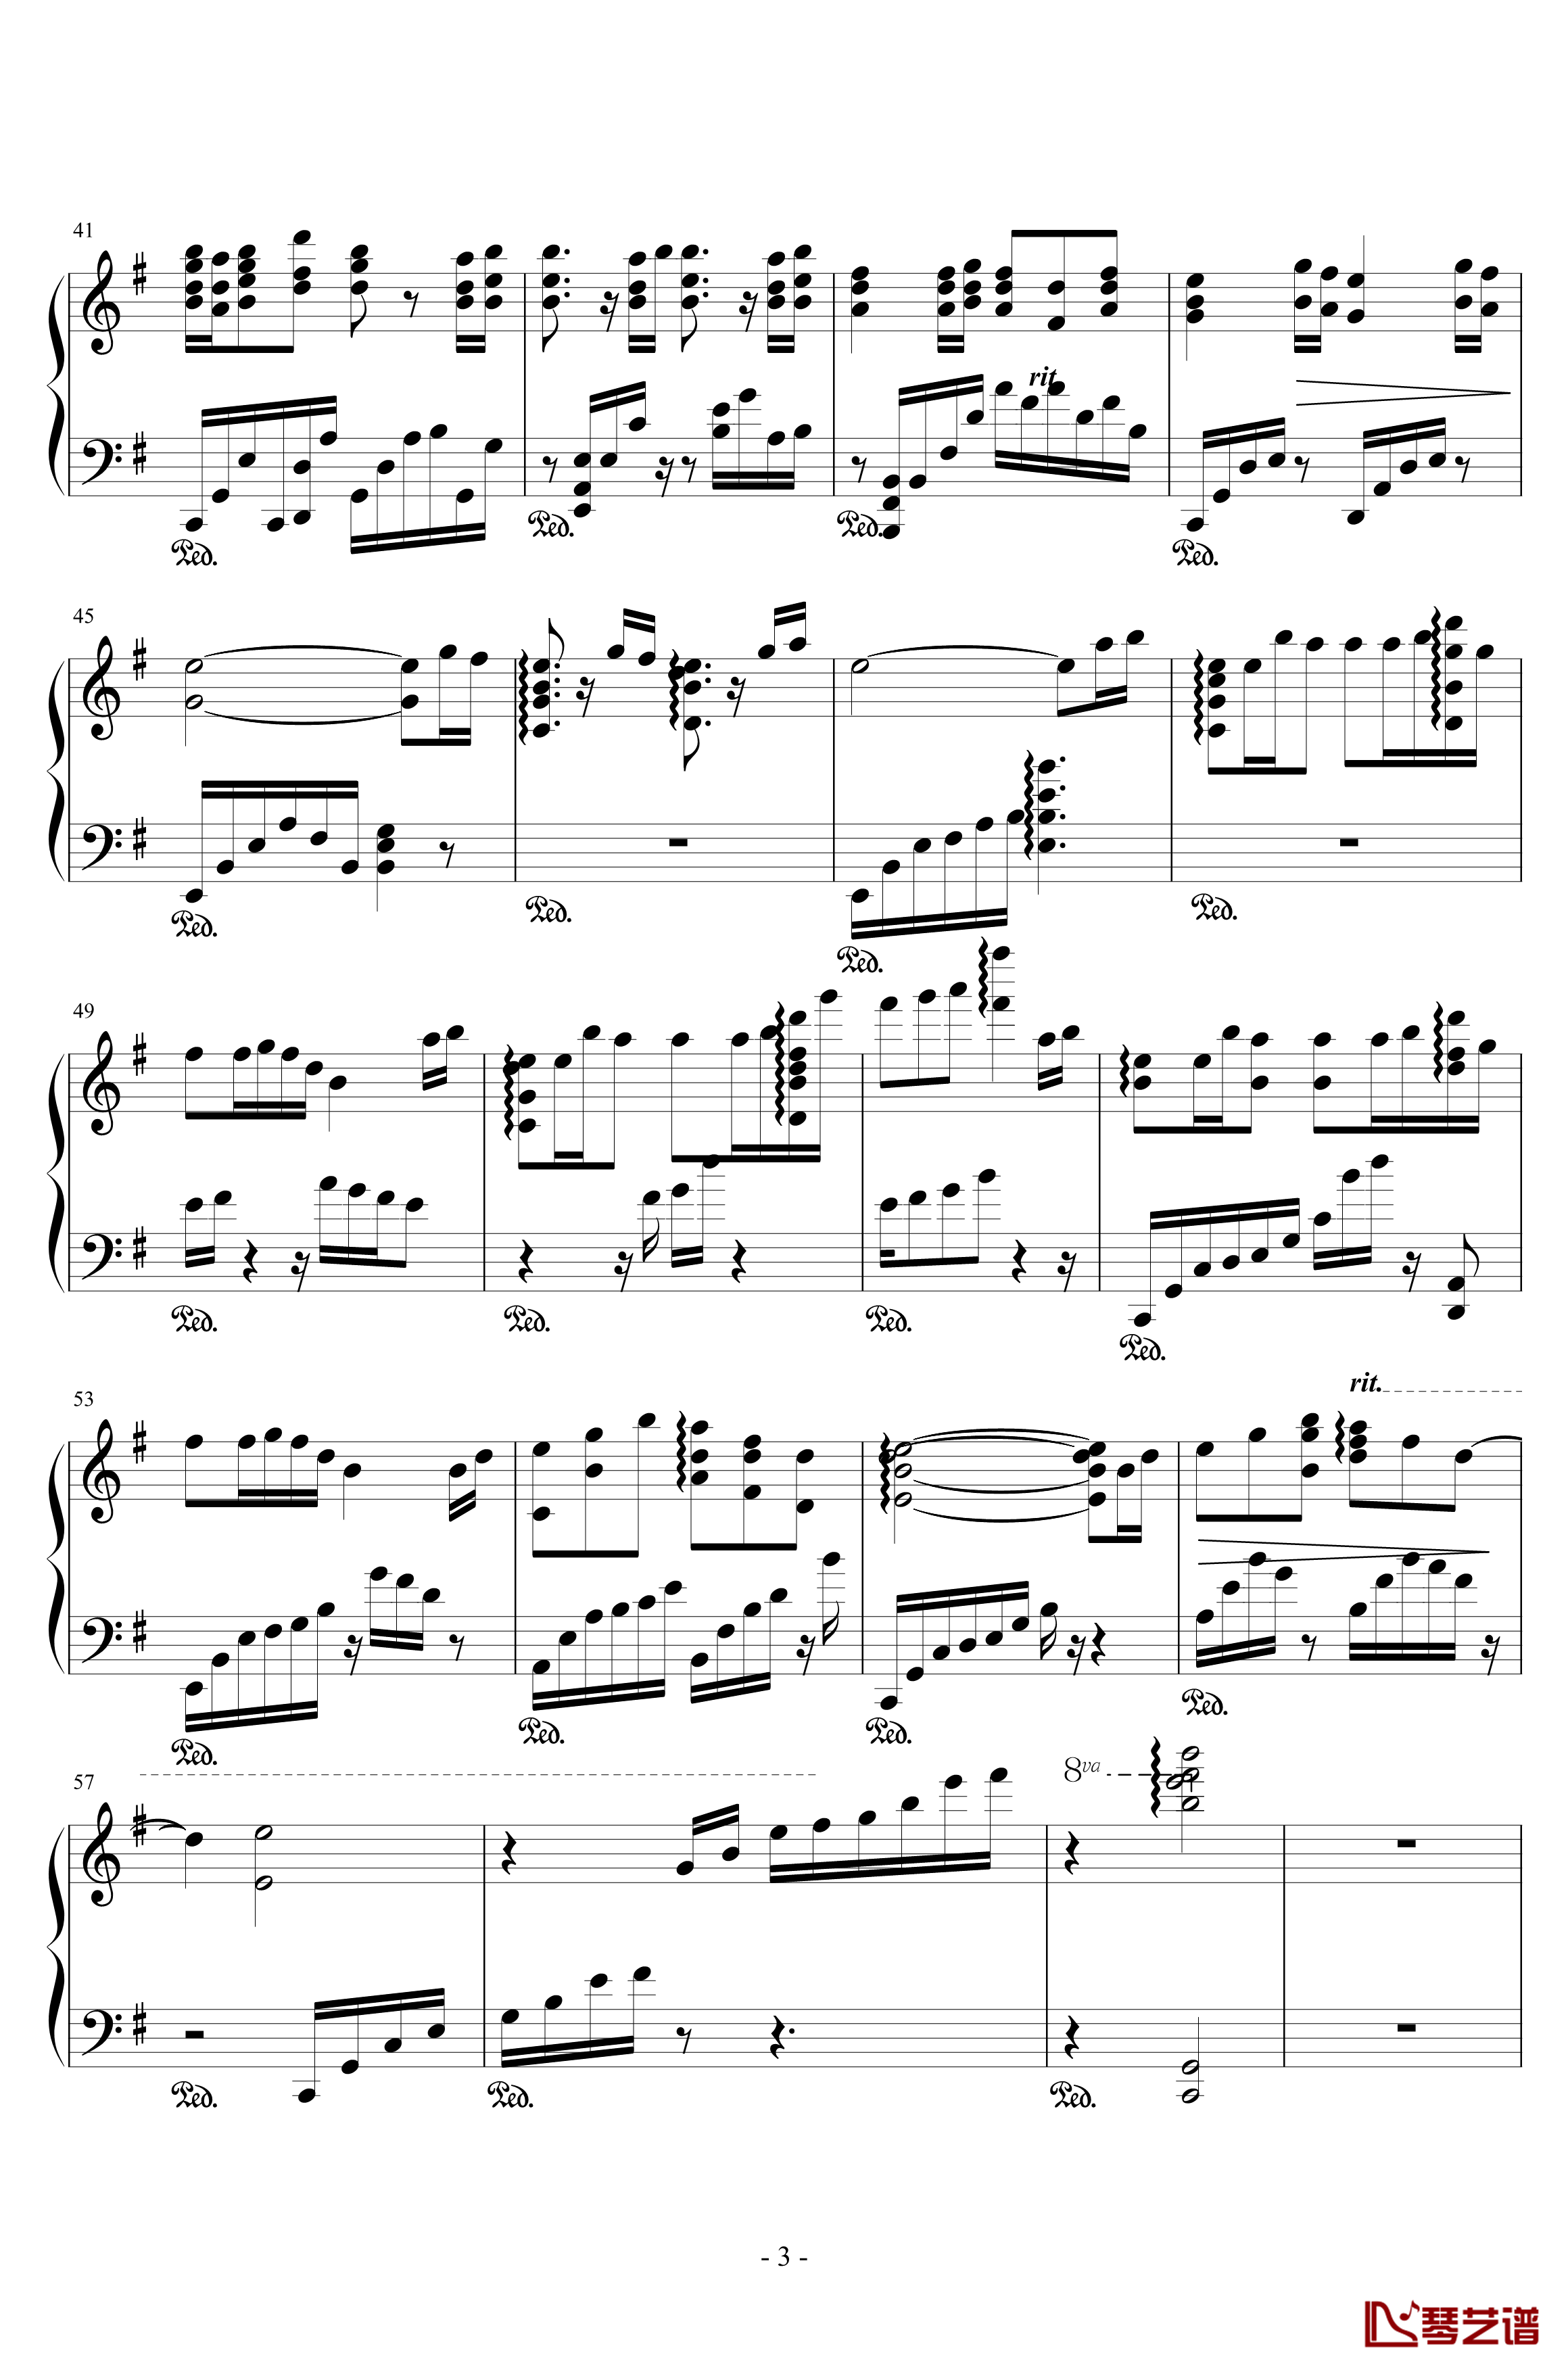 Liblume Pf solo钢琴谱-生命的备份3